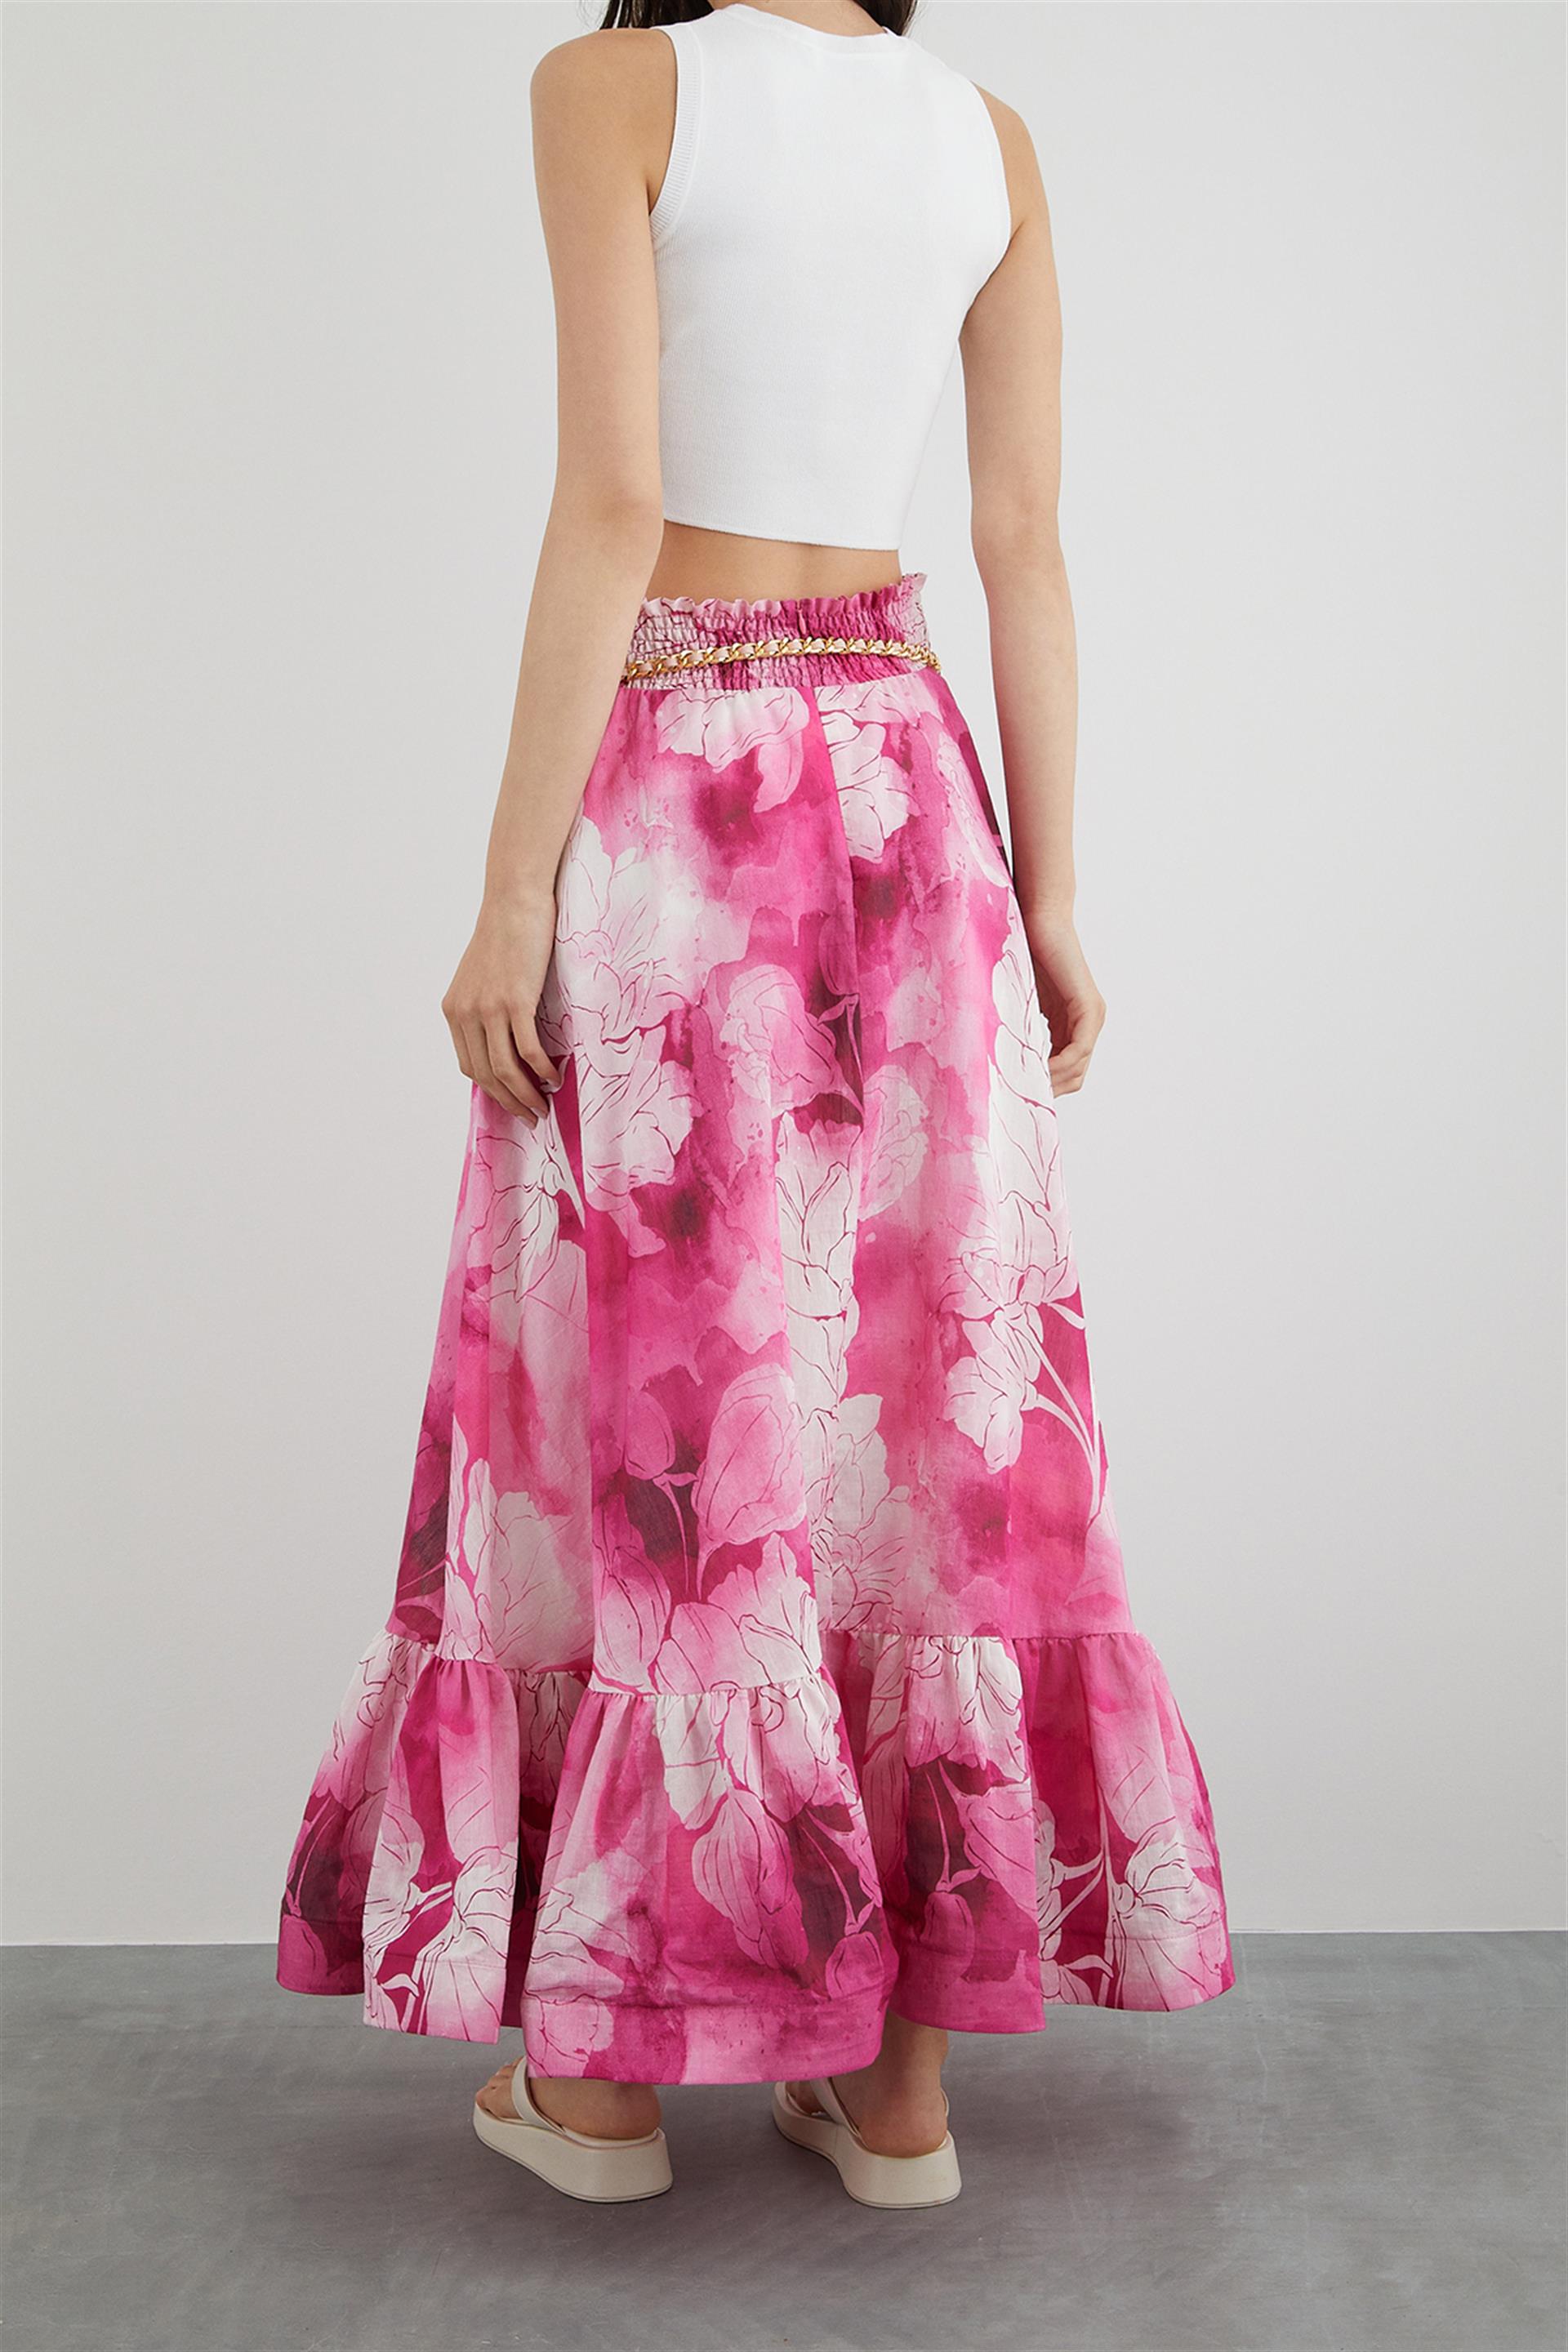 Villanelle Pink Skirt/ Pink Satin Skirt/ Pink Pleated Skirt/ Pink Skirt  With Lining/ Luxury Pink Skirt/ Hidden Zipper Skirt/ Skirt With Belt -   Canada